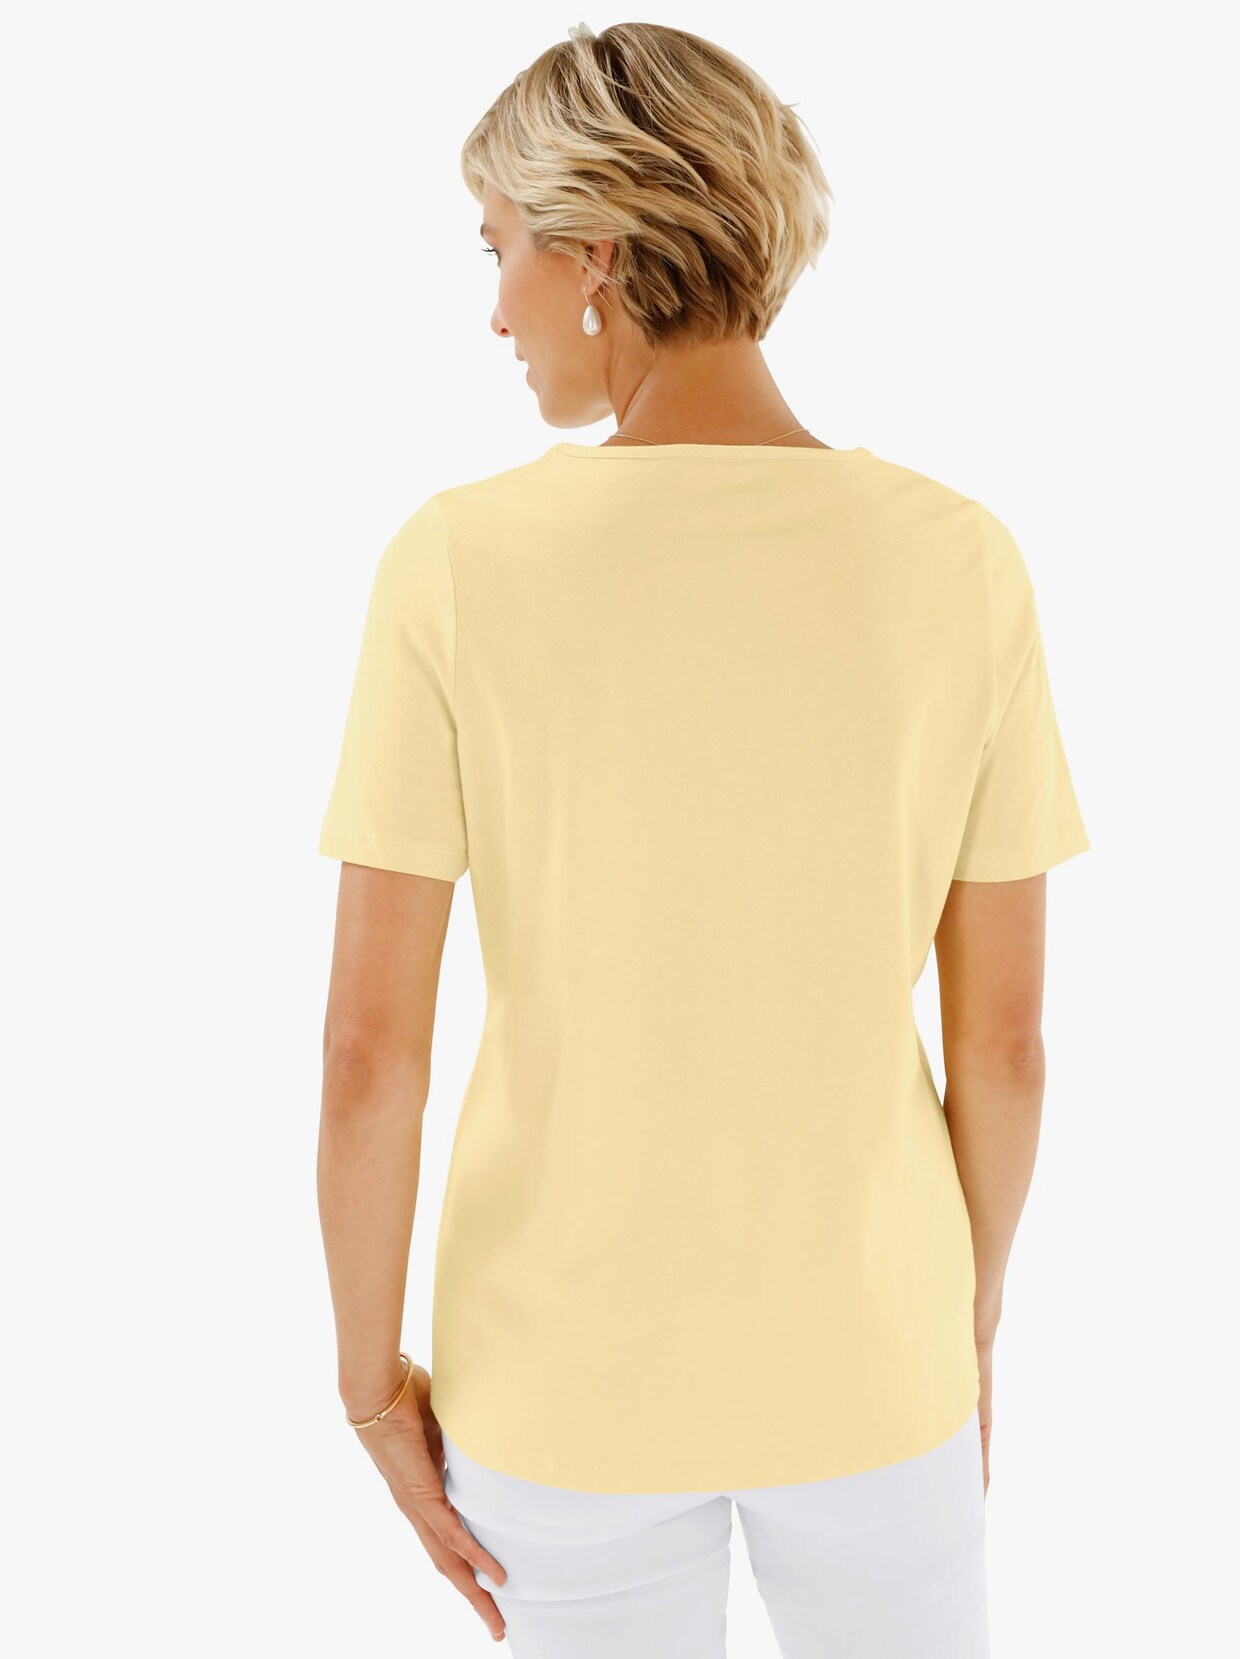 Tričko s okrúhlym výstrihom - žltá